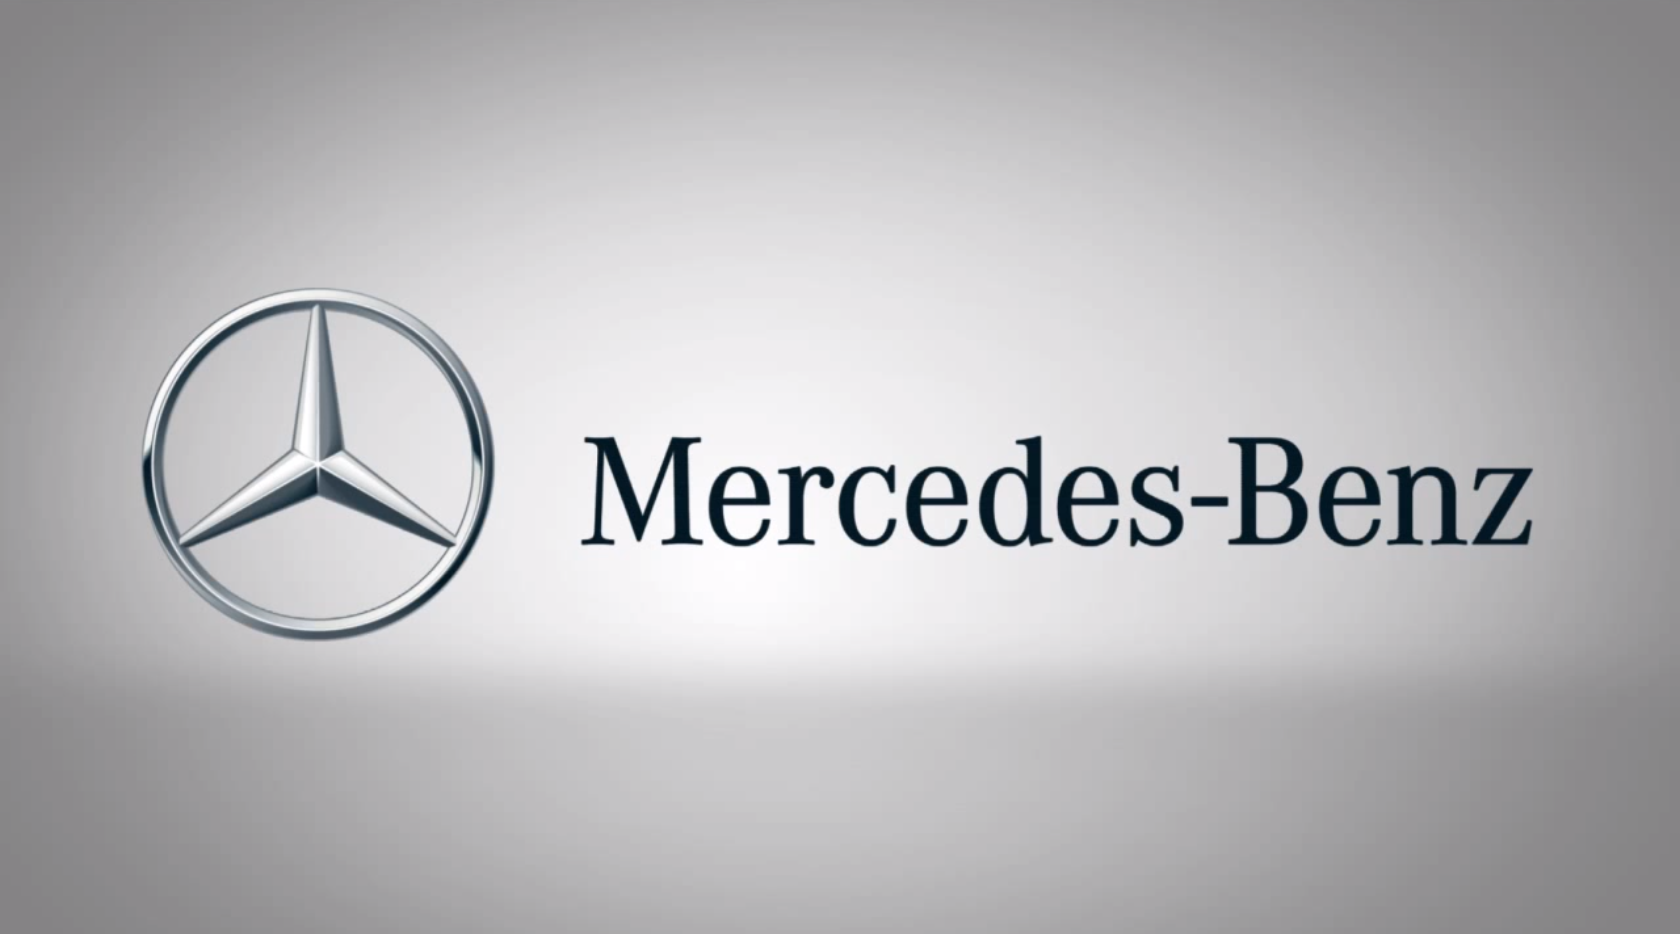 Mercedes текст. Daimler AG Mercedes-Benz. Мерседес- Бенц/ Mercedes-Benz лого. Мерседес Даймлер Бенц. Mercedes Benz Daimler logo.